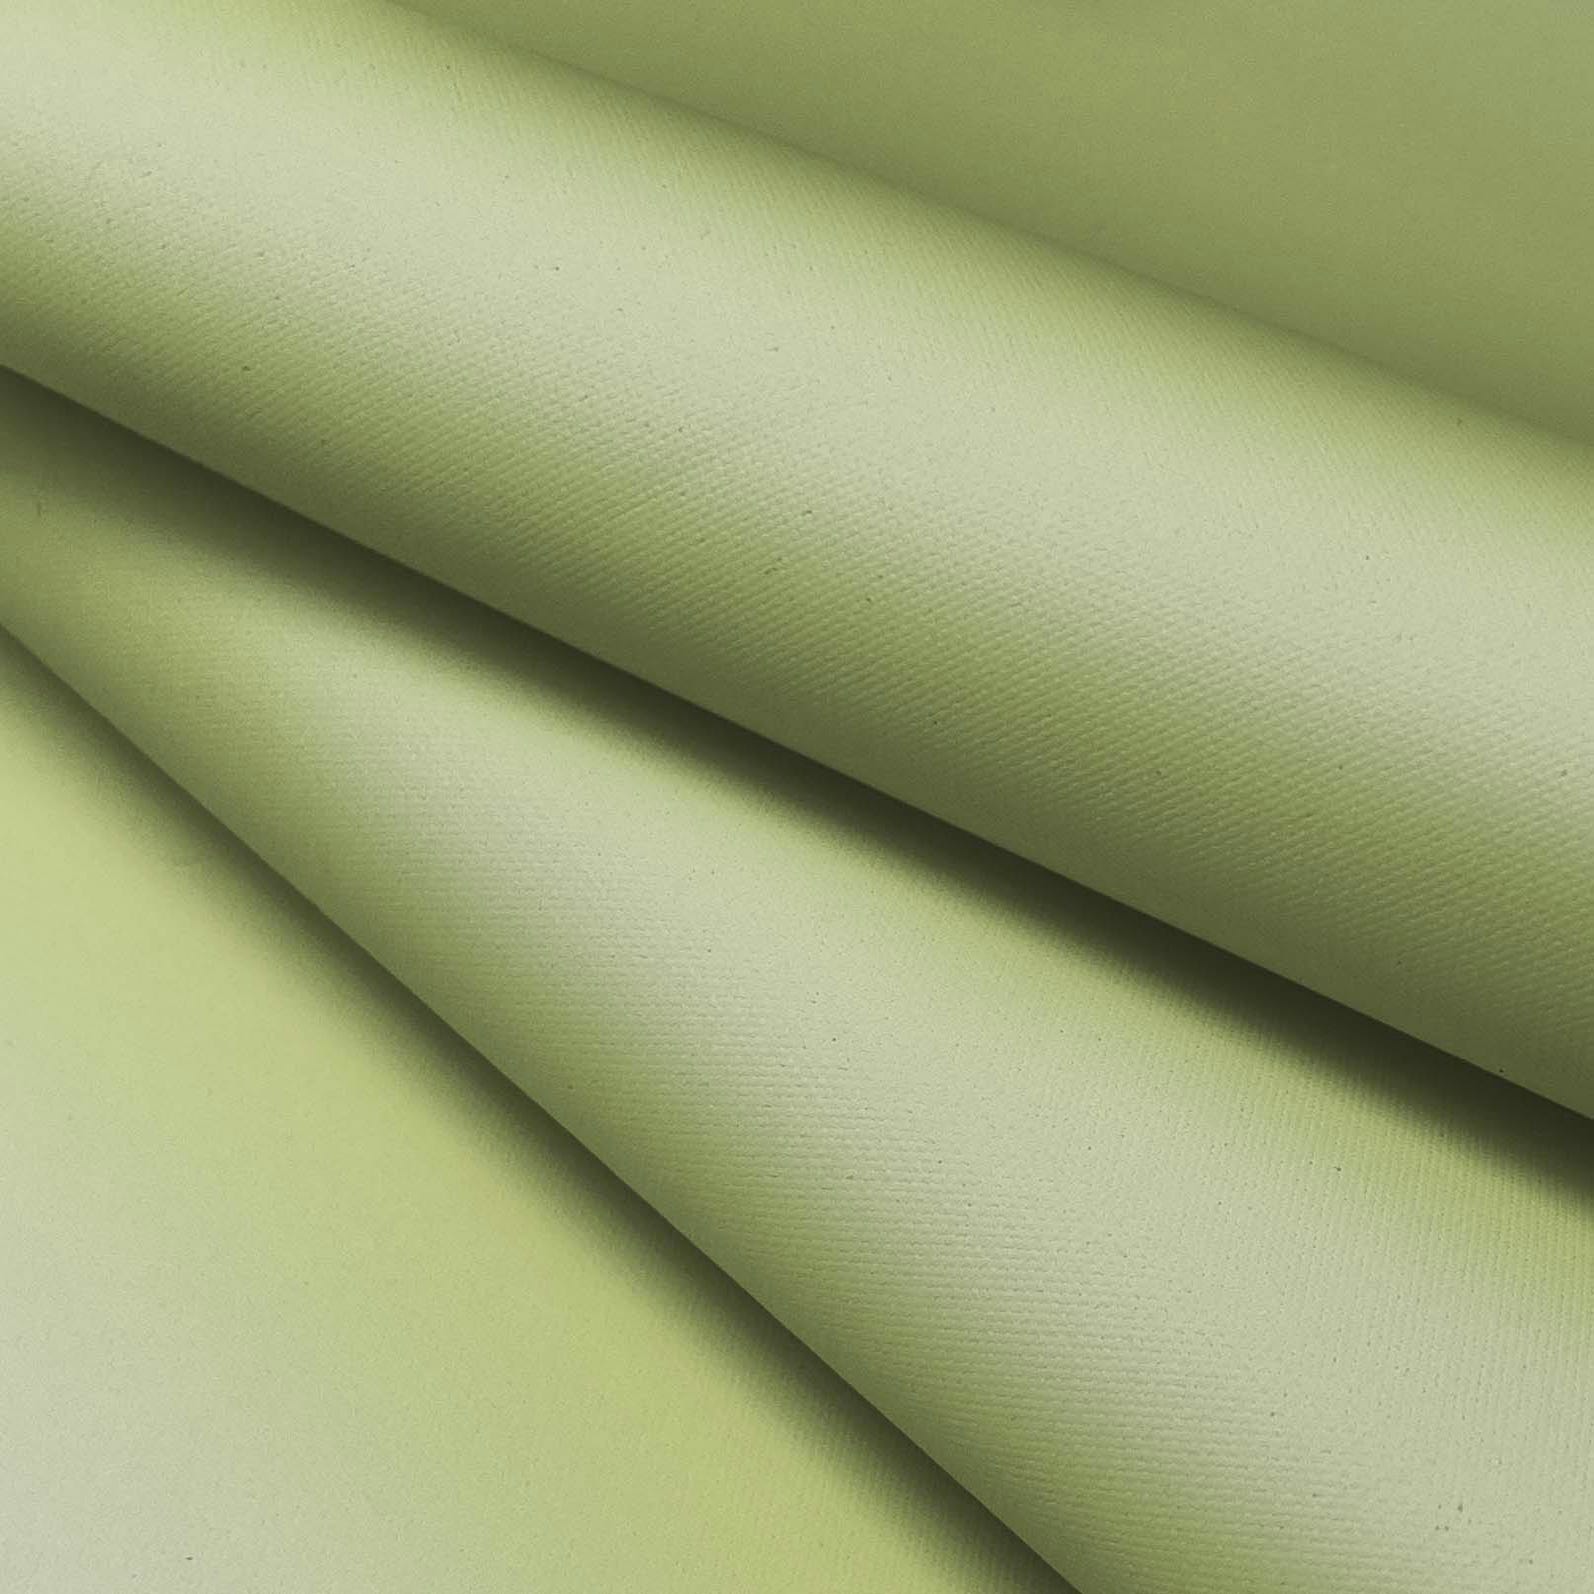 Tela Lona Impermeable Verde Caqui Texxion por 10 Metros para crear  artículos impermeables